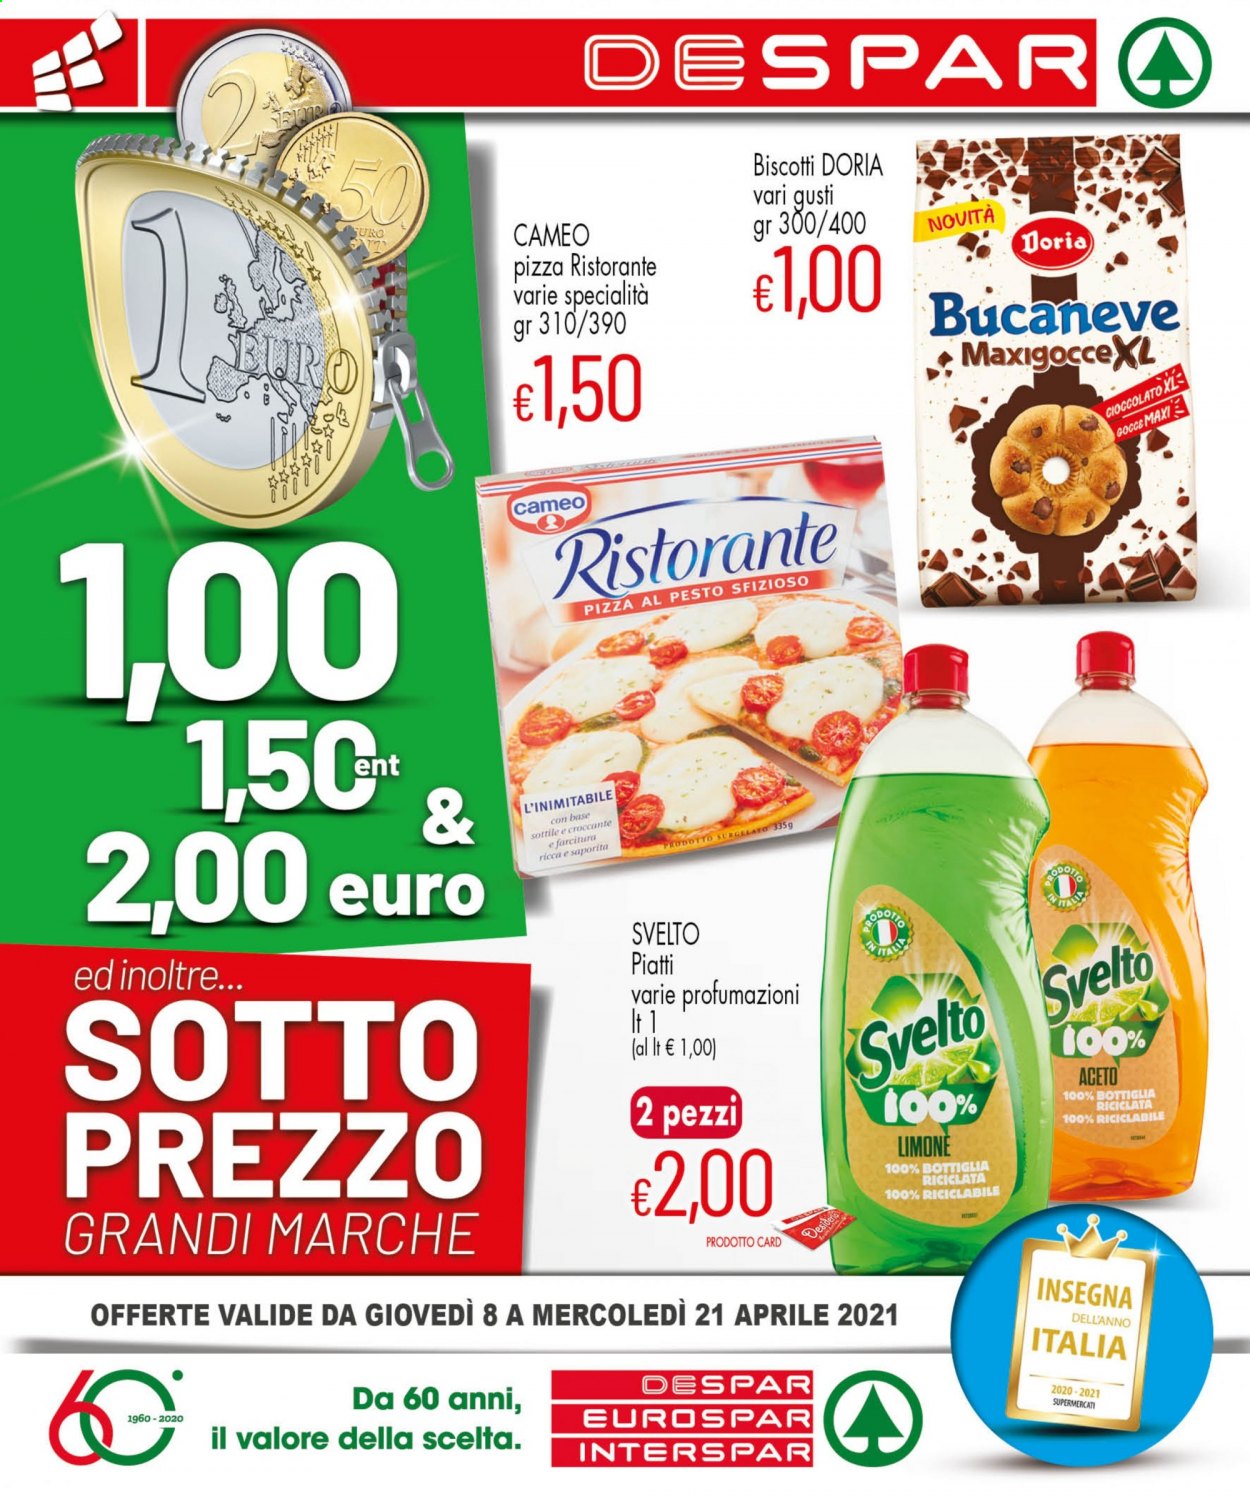 thumbnail - Volantino Eurospar - 8/4/2021 - 21/4/2021 - Prodotti in offerta - Cameo, pizza, Pizza Ristorante, biscotti, Doria, pesto, Svelto, detergente per piatti. Pagina 1.